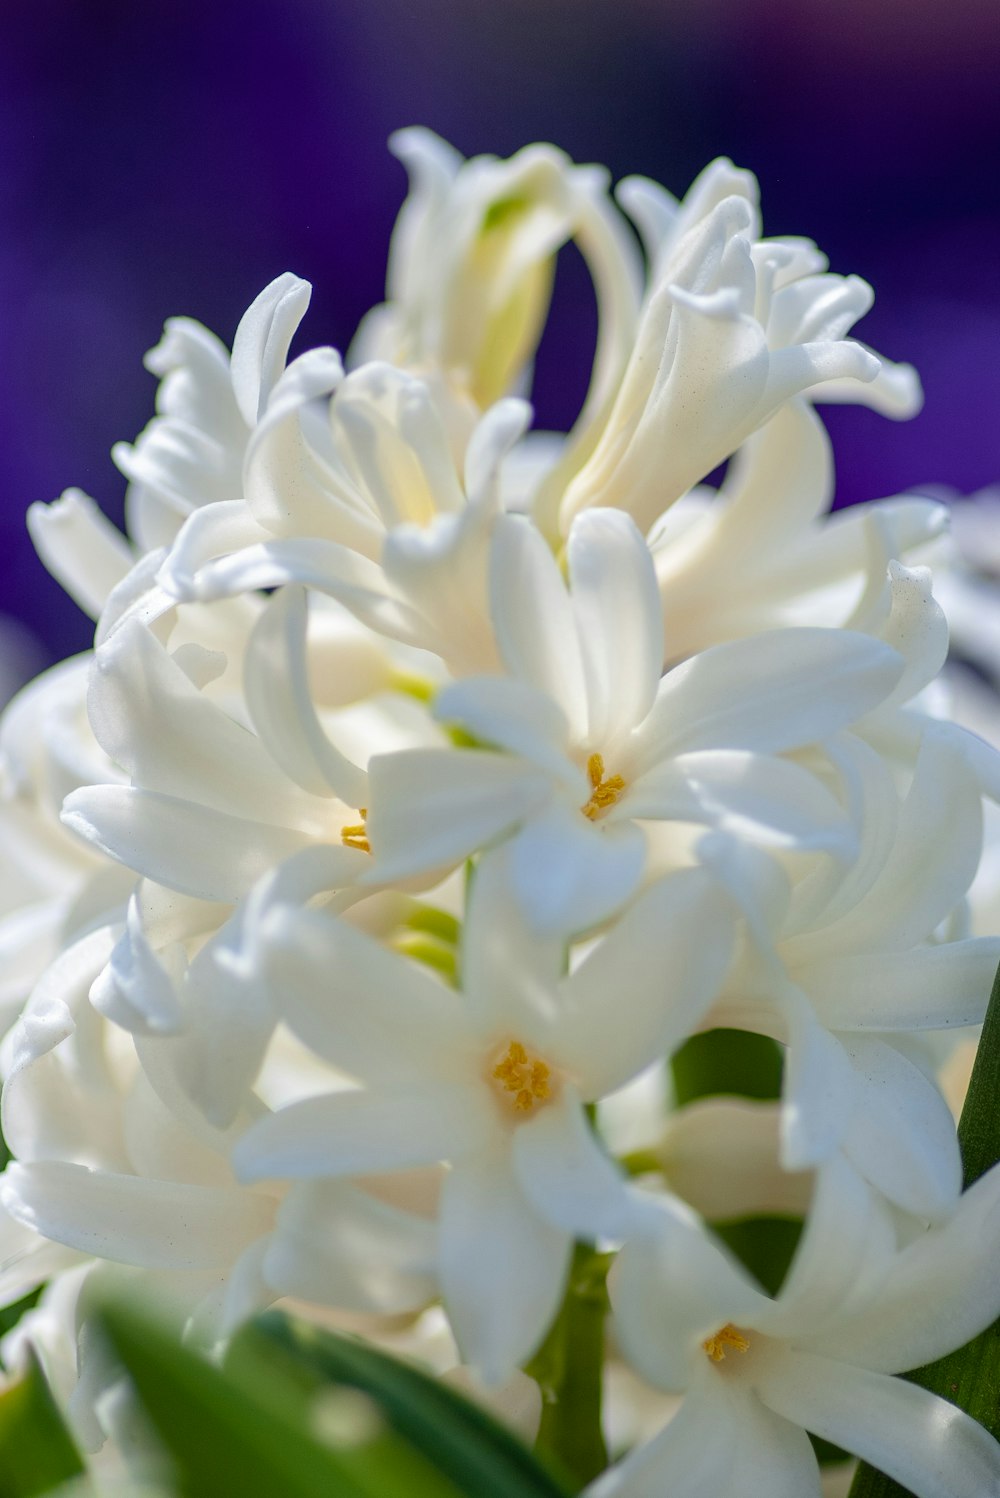 Nahaufnahme der weißblättrigen Blumenpflanze